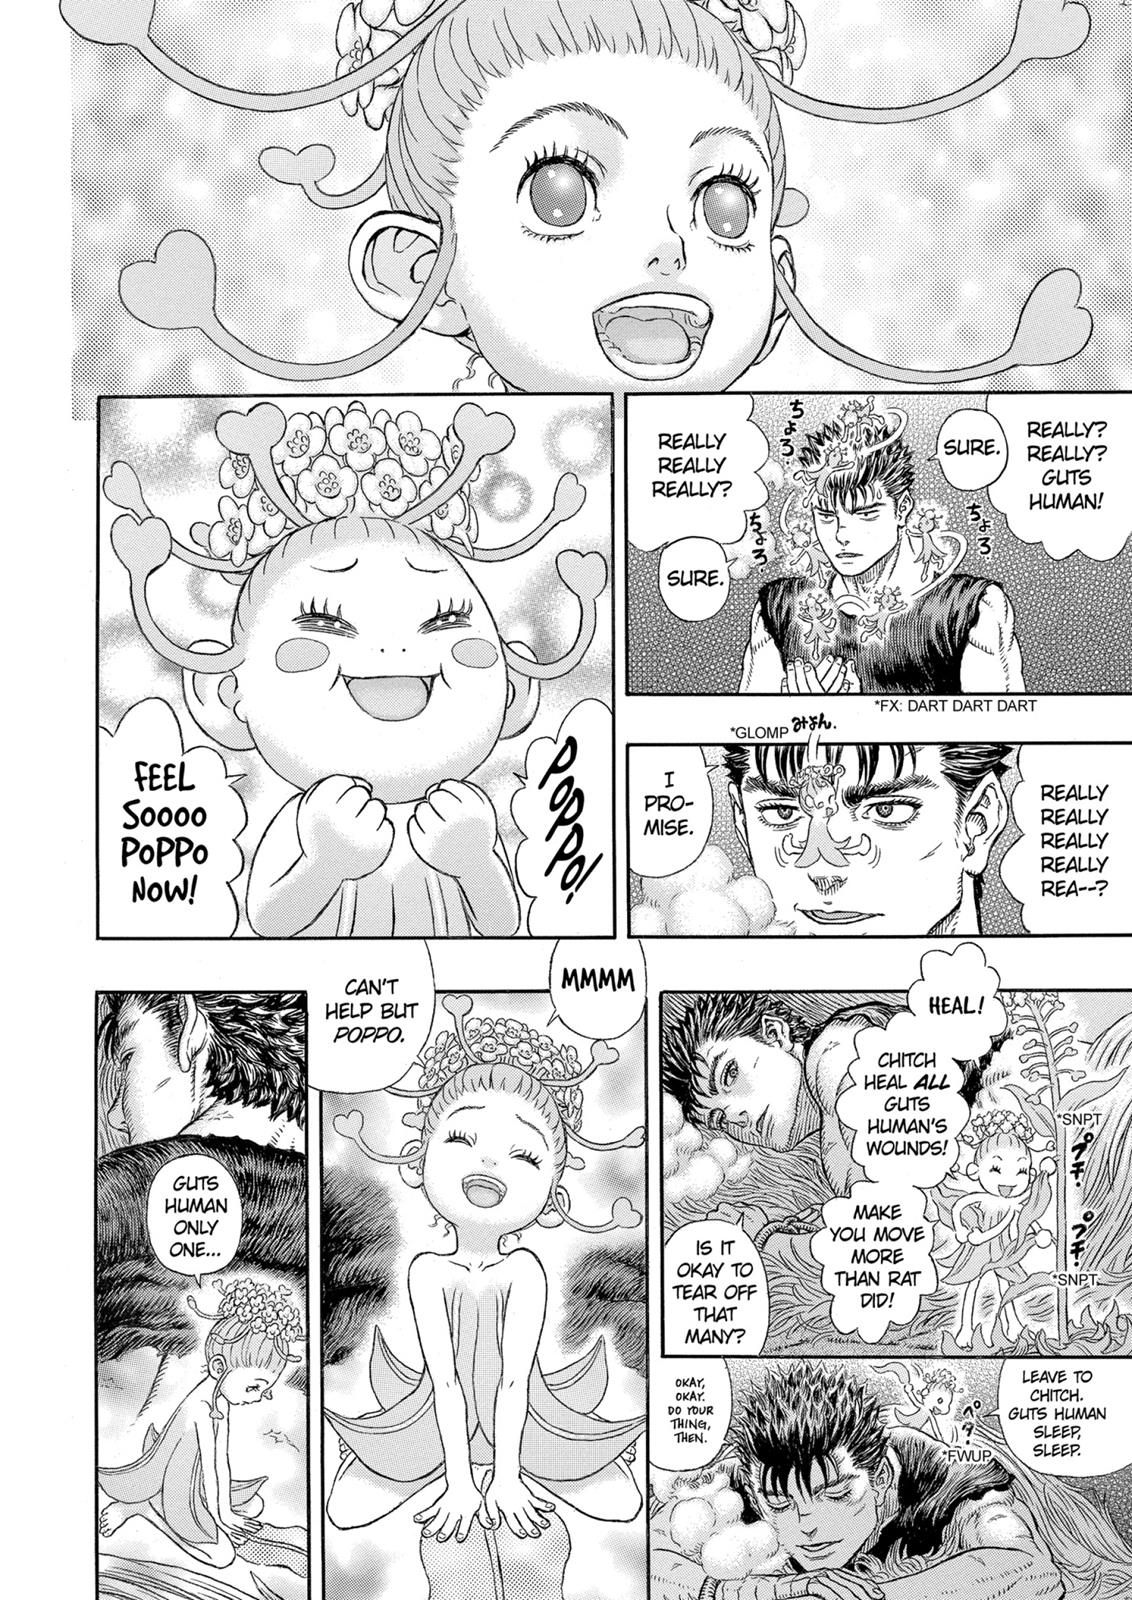 Berserk Manga Chapter 330 image 17